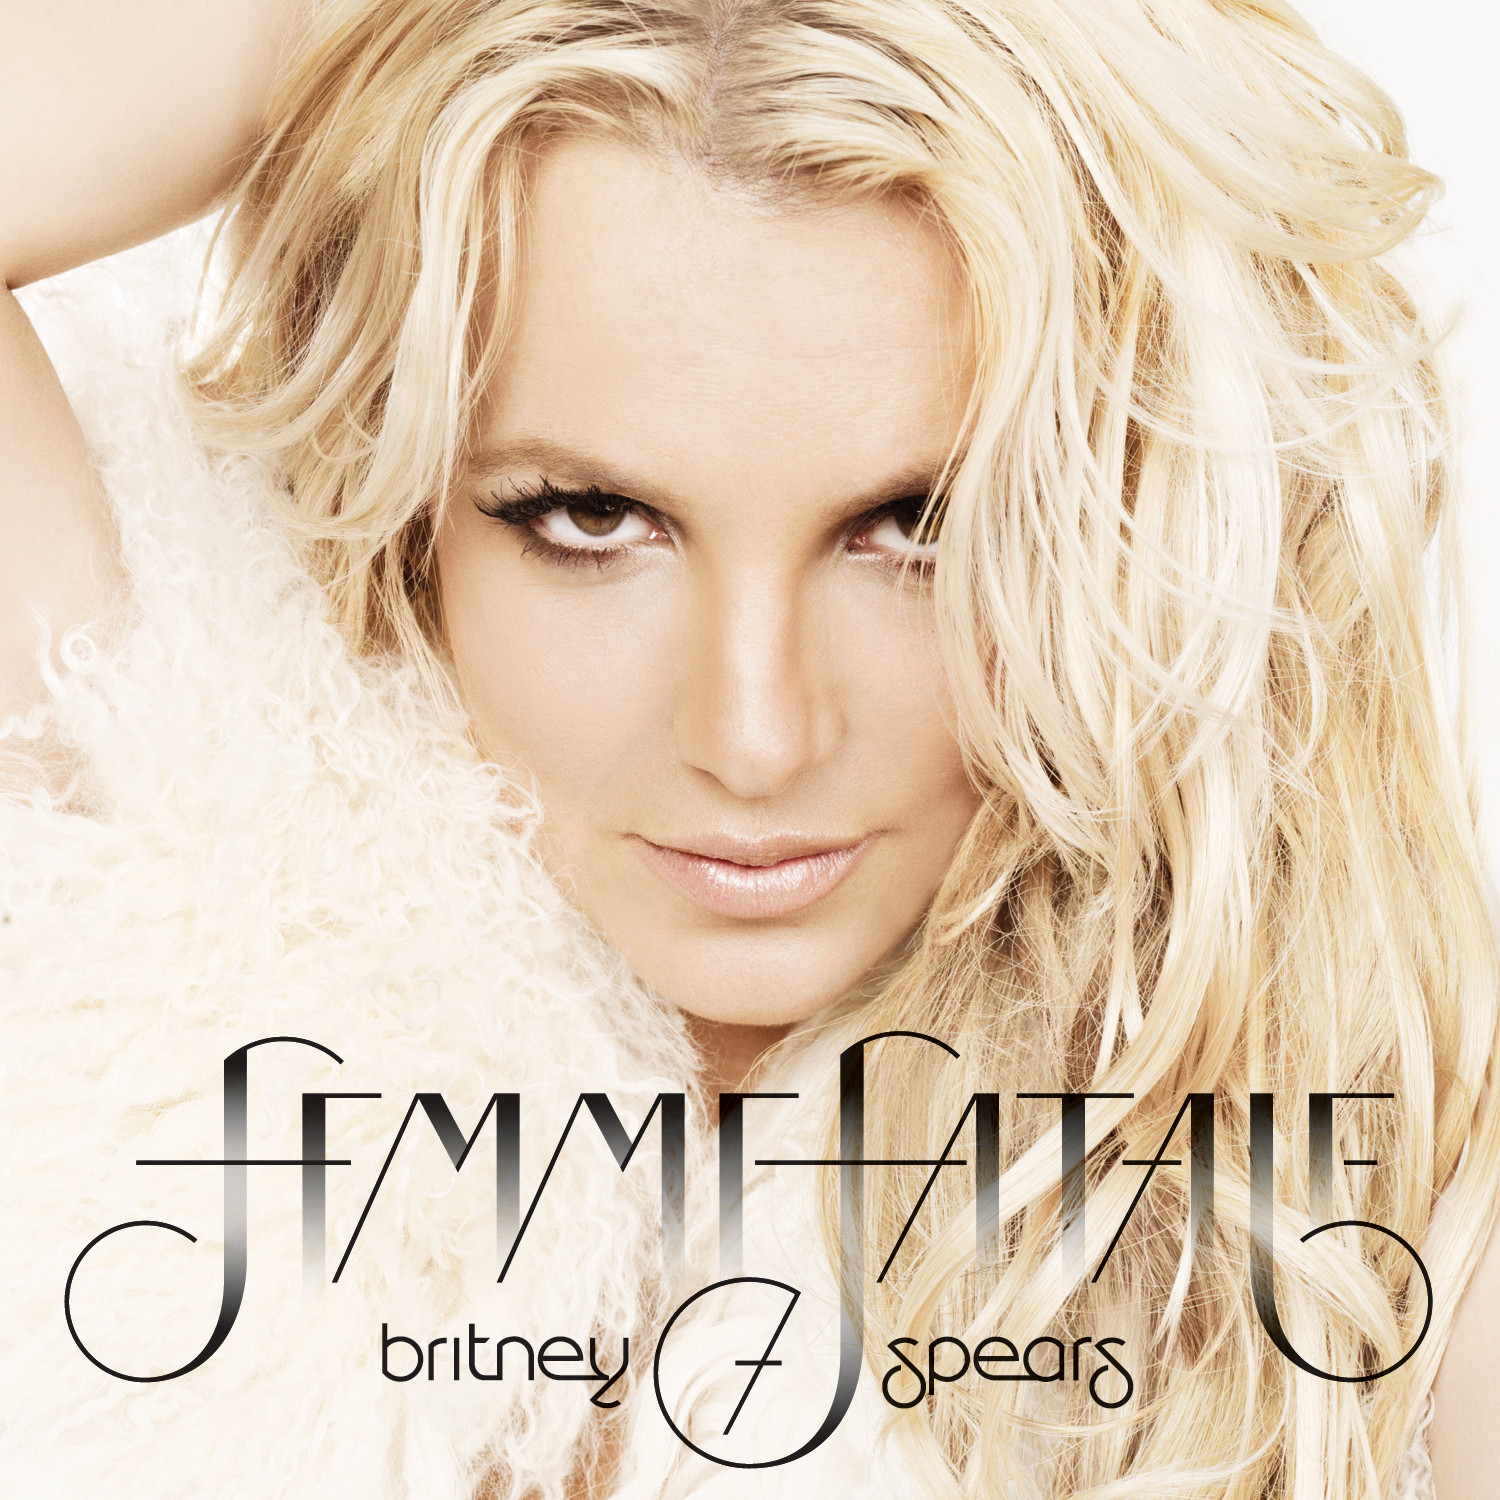 http://3.bp.blogspot.com/-kcvbzcnZicI/TvxnZP7OAcI/AAAAAAAAGq8/tyrx0CcpQcI/s1600/Britney-Spears-Femme-Fatale.jpg